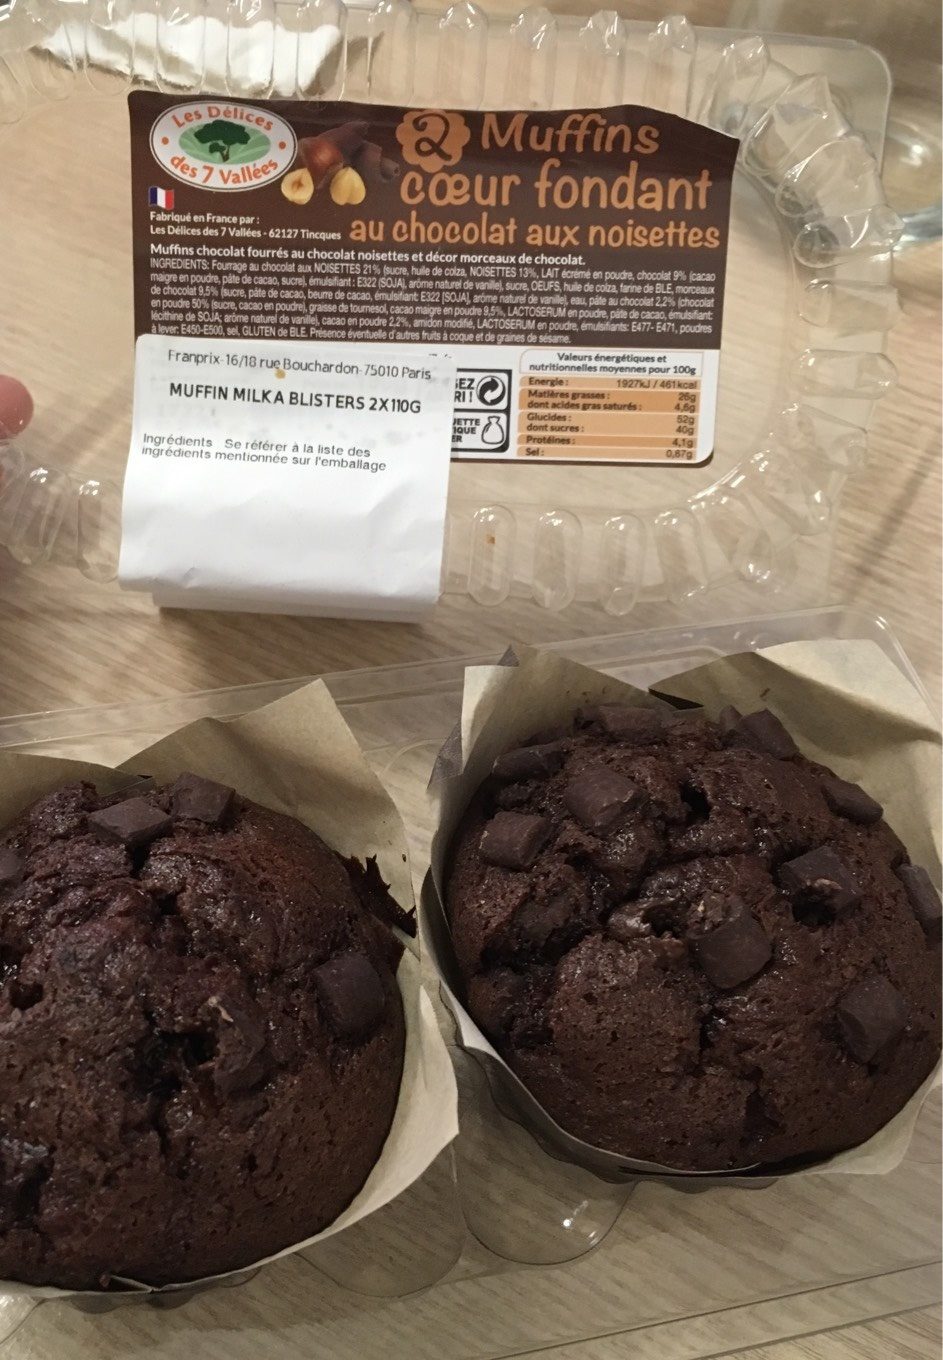 2 muffins Cœur Fondant au Chocolat aux Noisettes - Product - fr